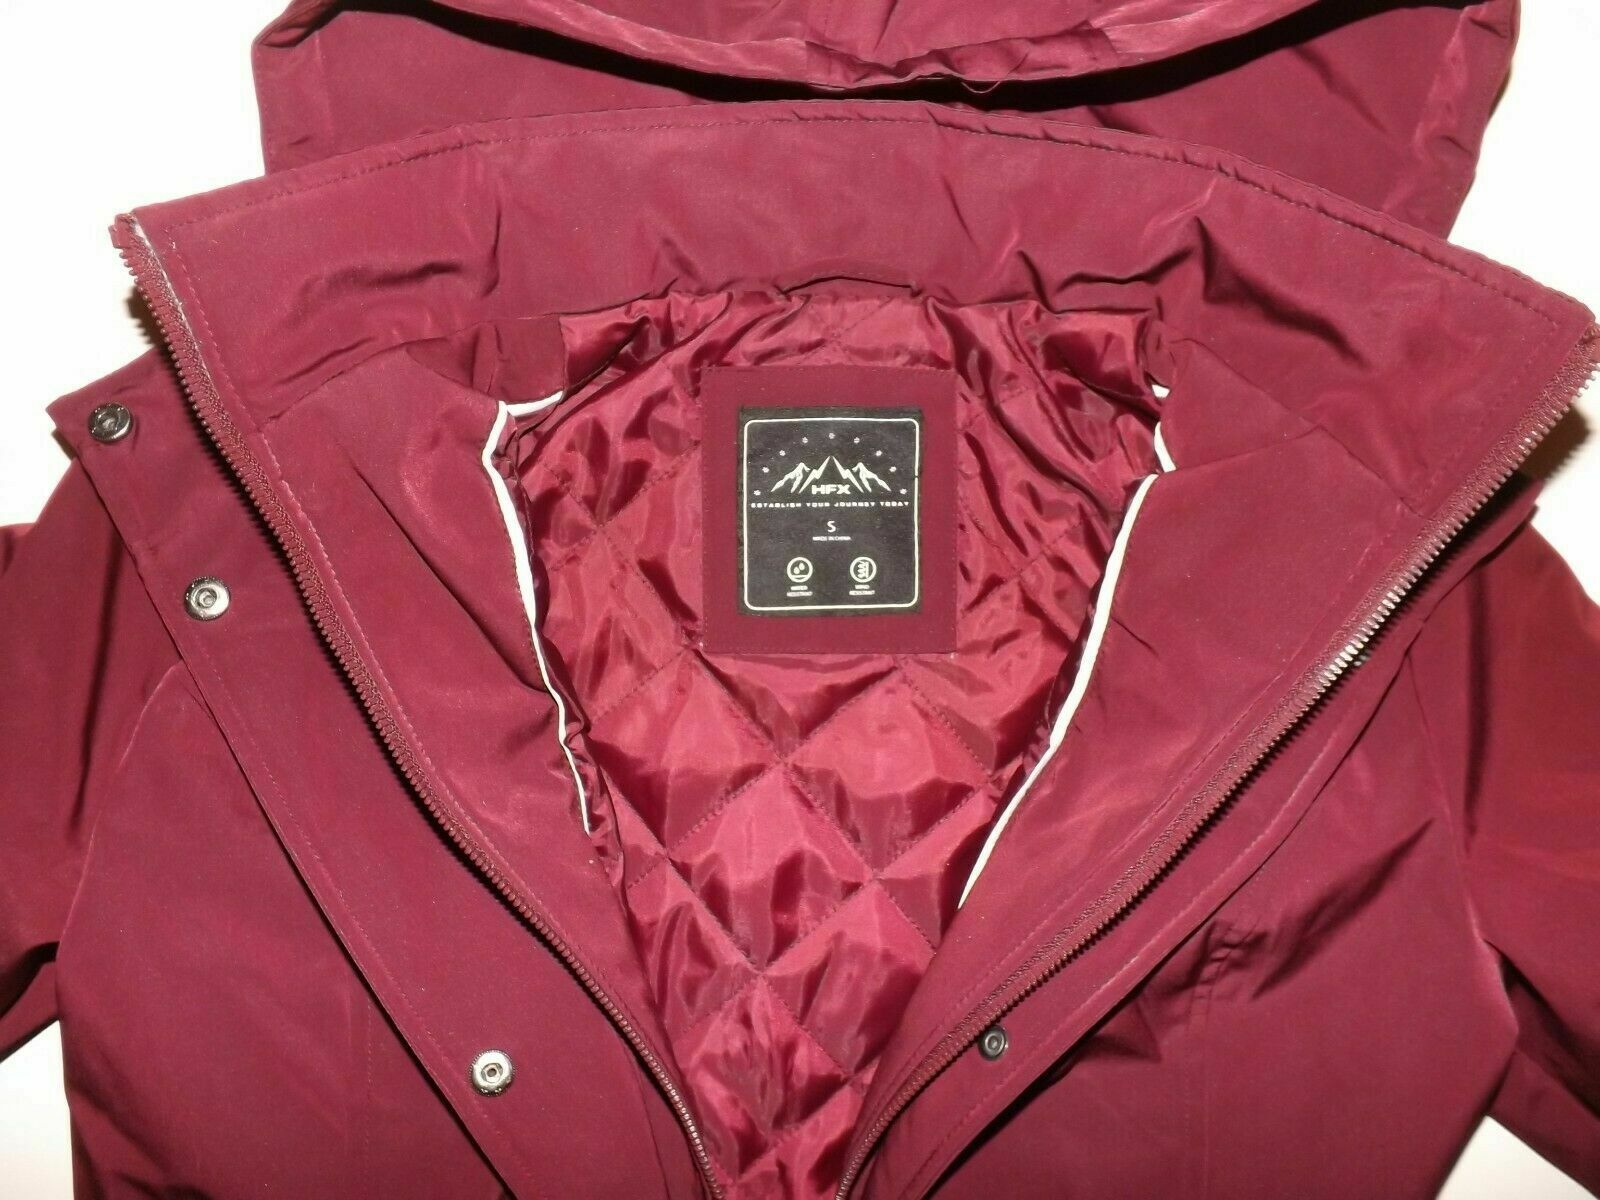 HFX Womens Rain Jacket Coat Zinfandel Burgundy Hooded Jacket Size Small - image 2 of 3